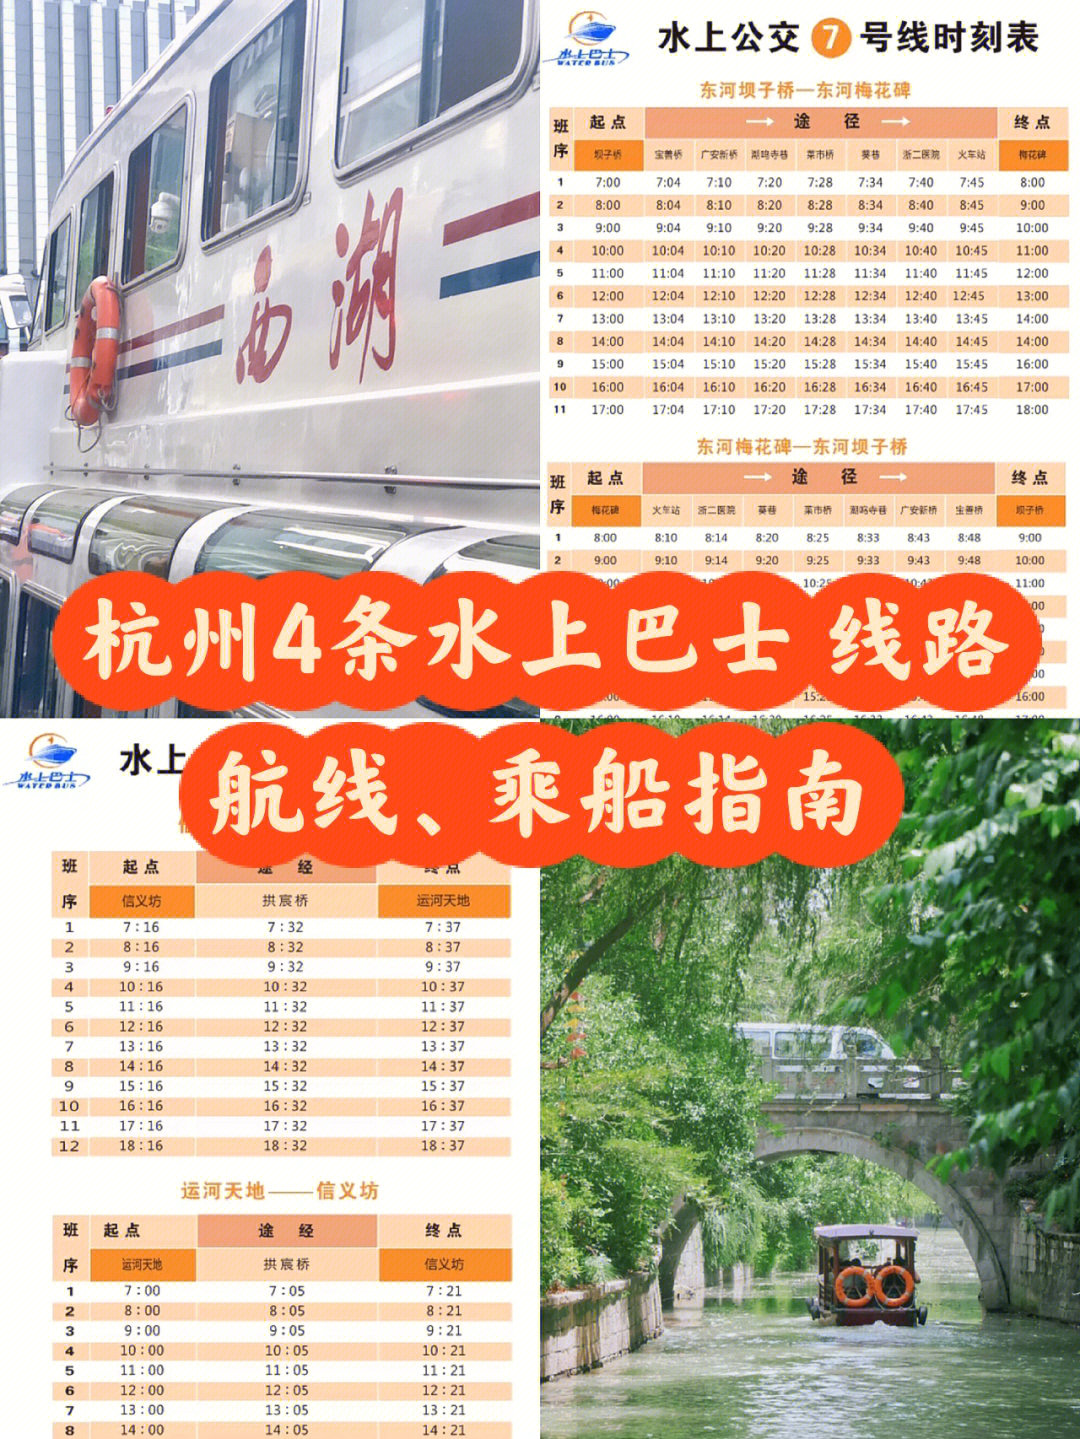 杭州小众旅游路线:4条景色宜人的水上巴士